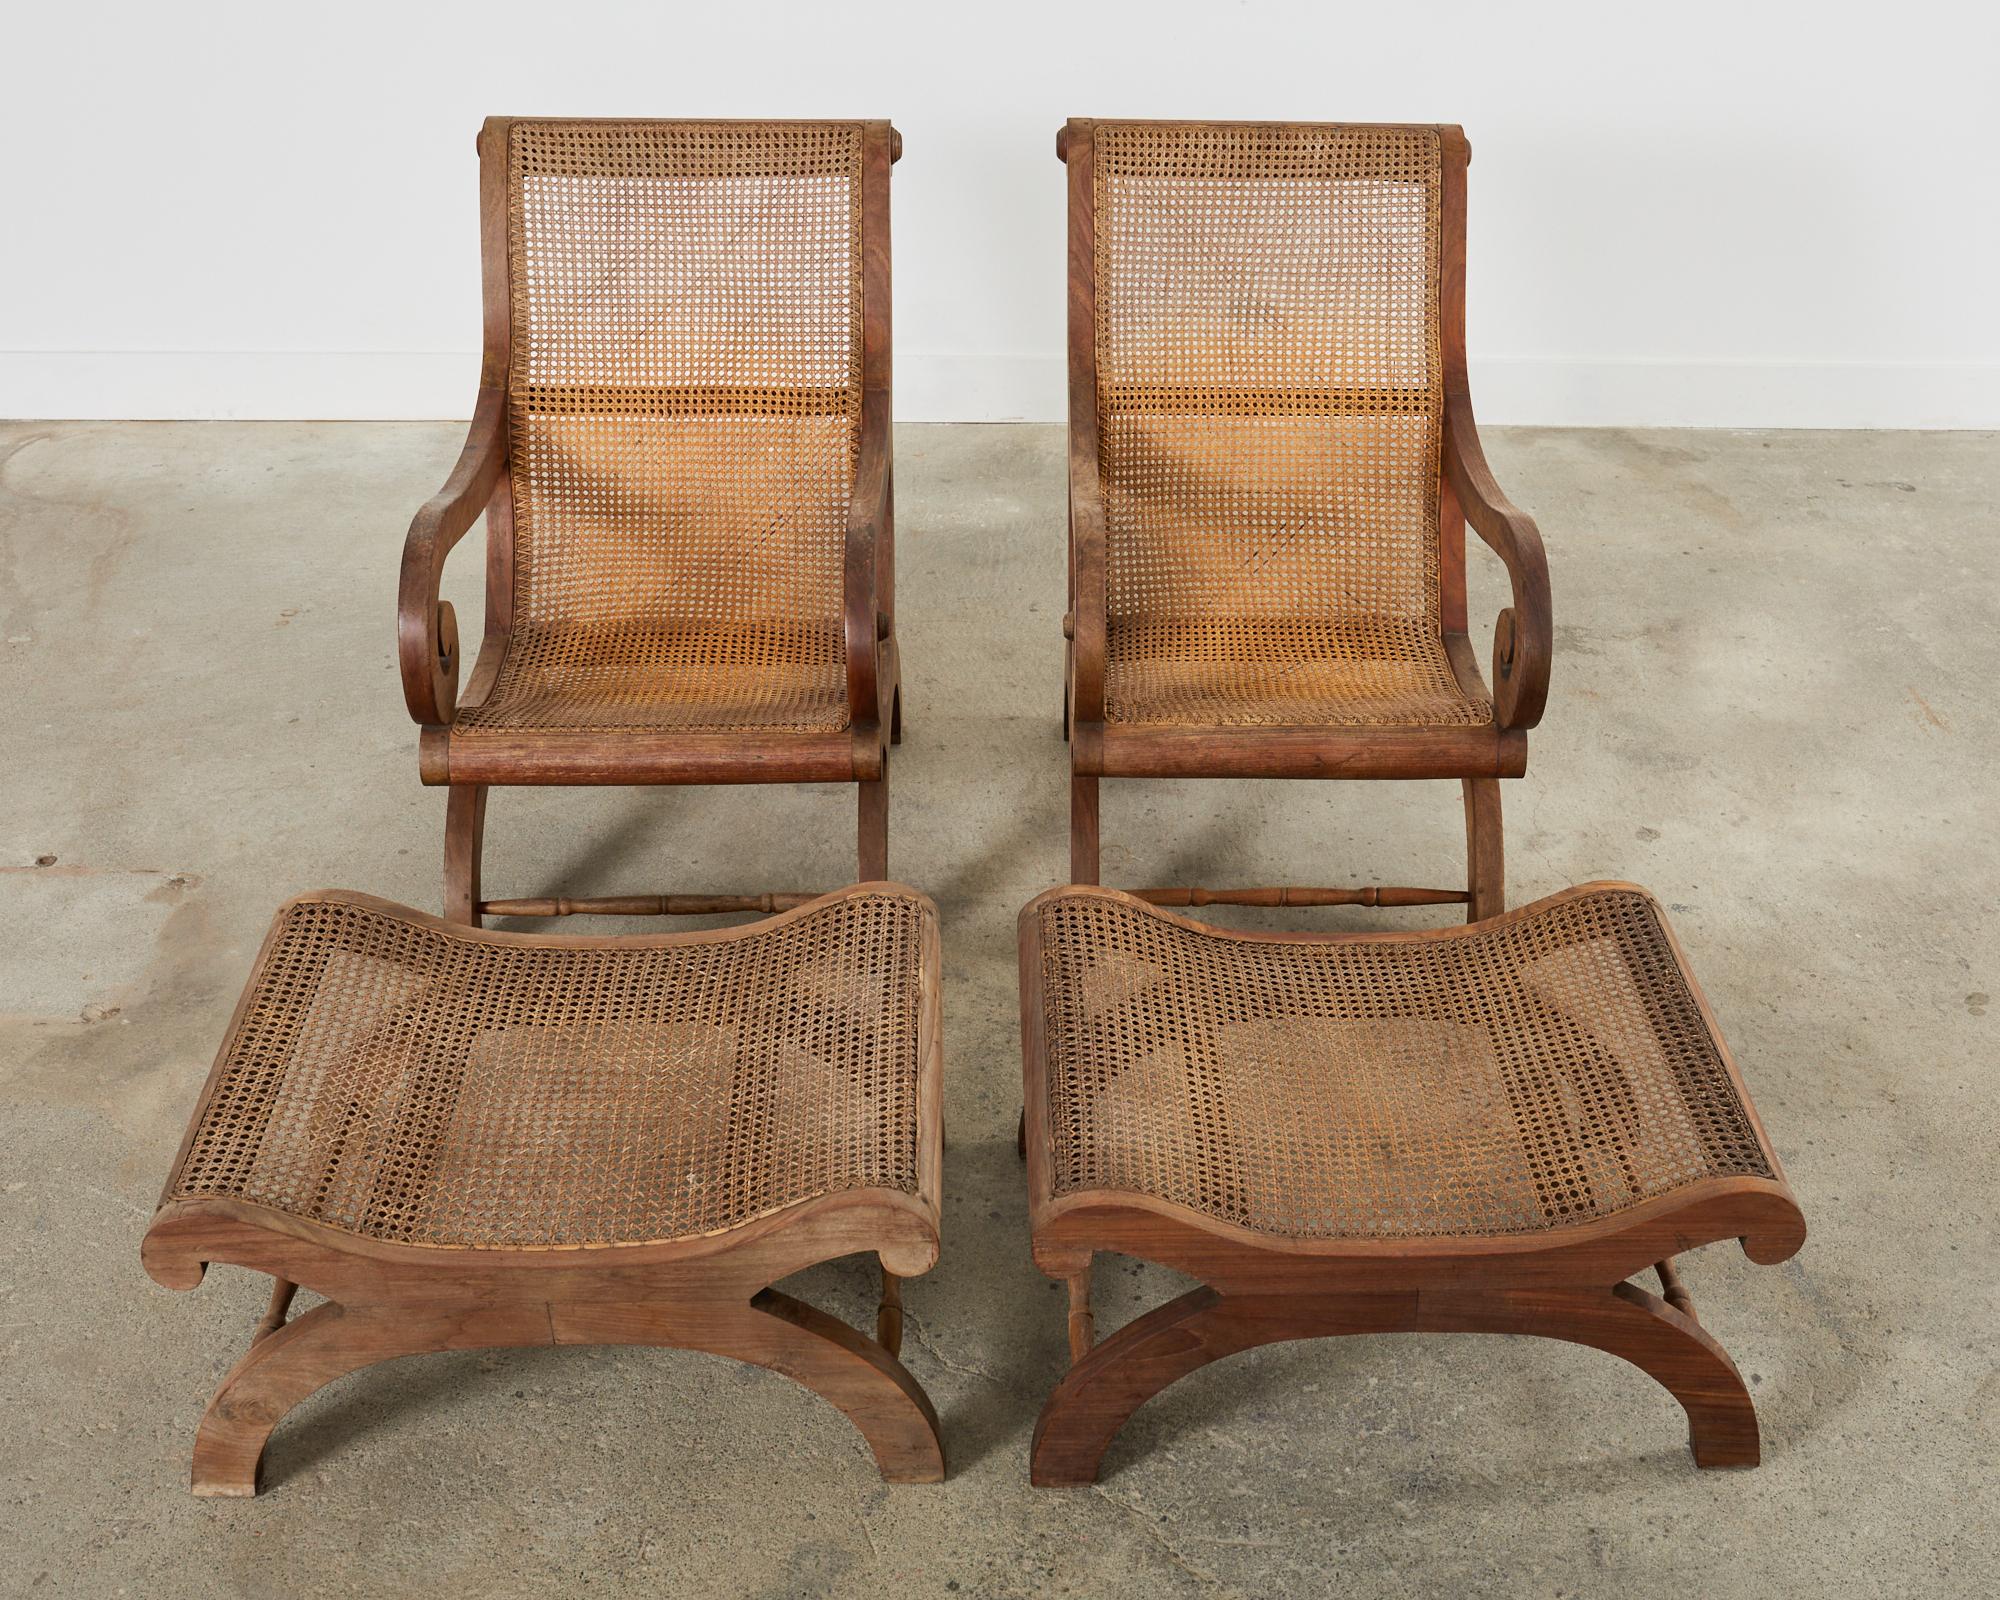 Sud-asiatique Paire de chaises longues de Plantation de style British Colonial avec ottomans  en vente